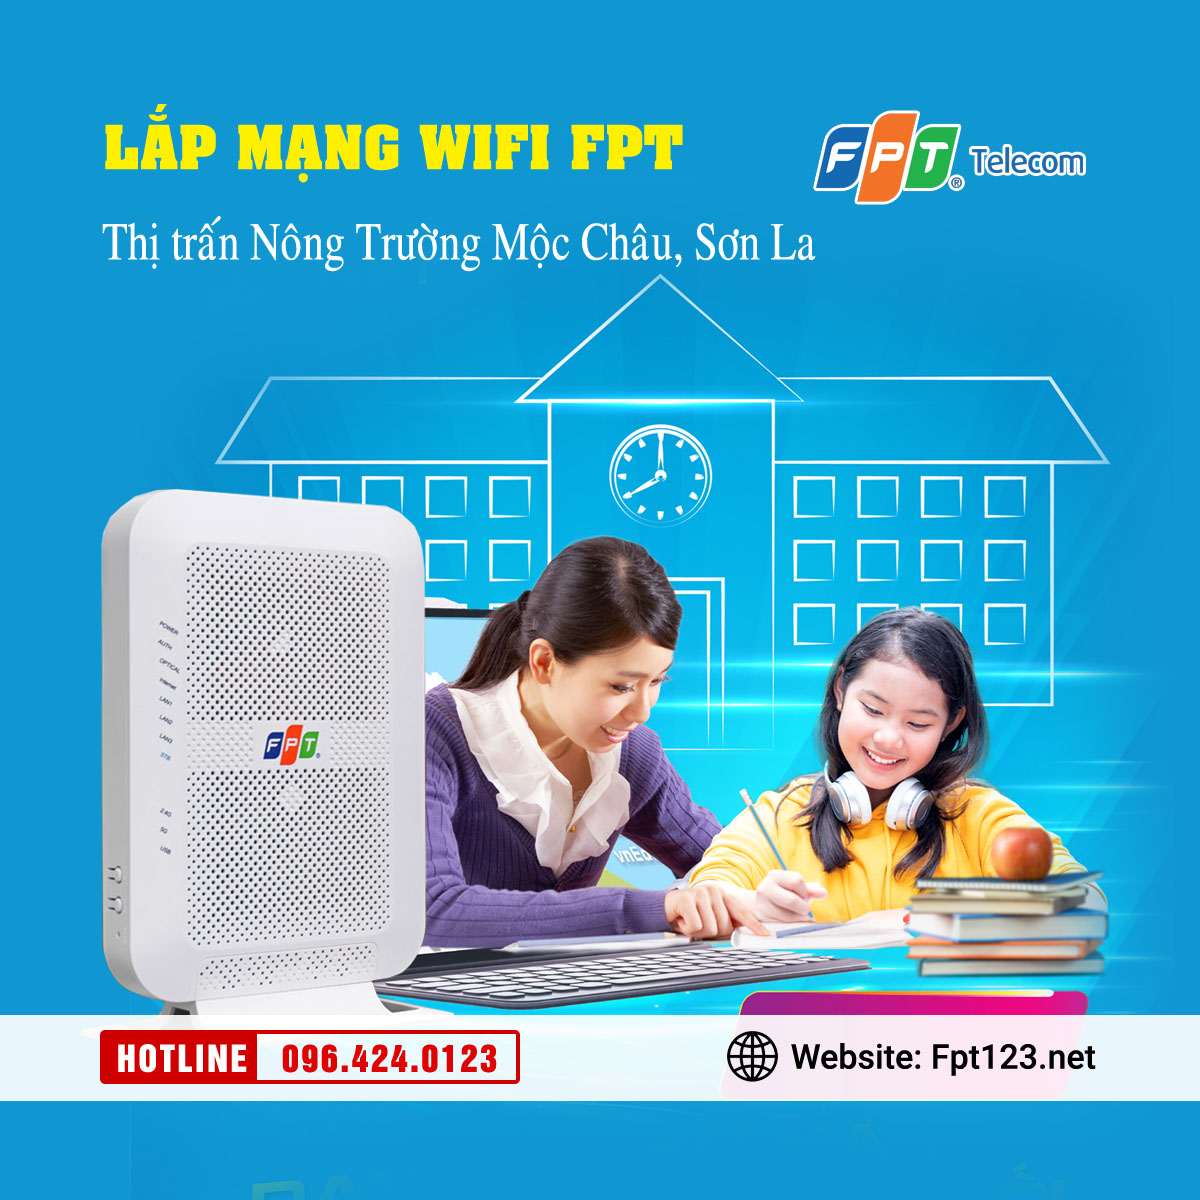 Lắp mạng wifi FPT ở thị trấn Nông Trường, Mộc Châu, Sơn La